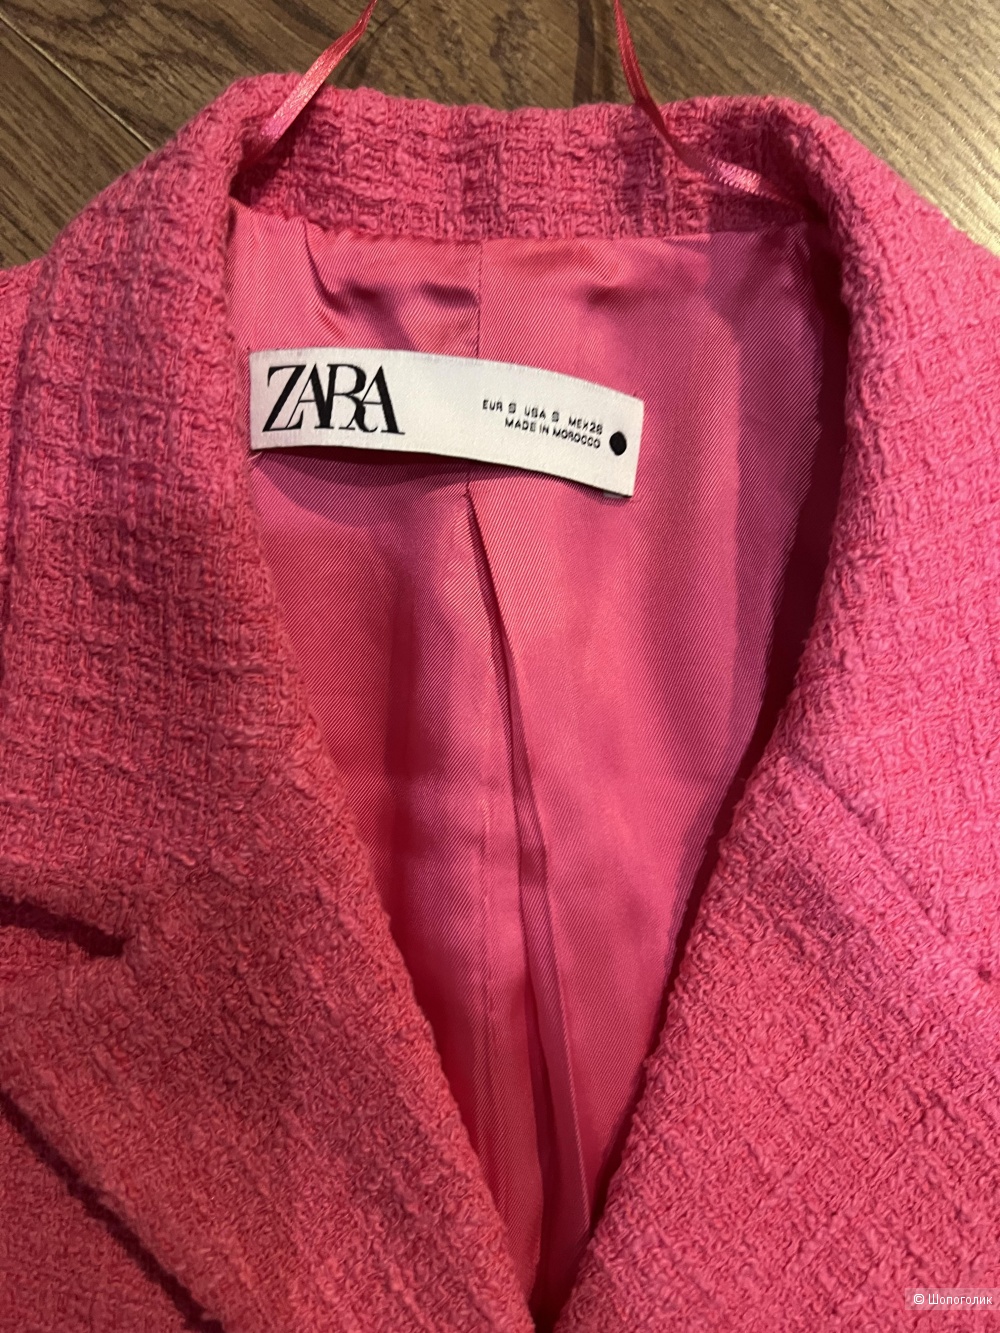 Пиджак Zara S